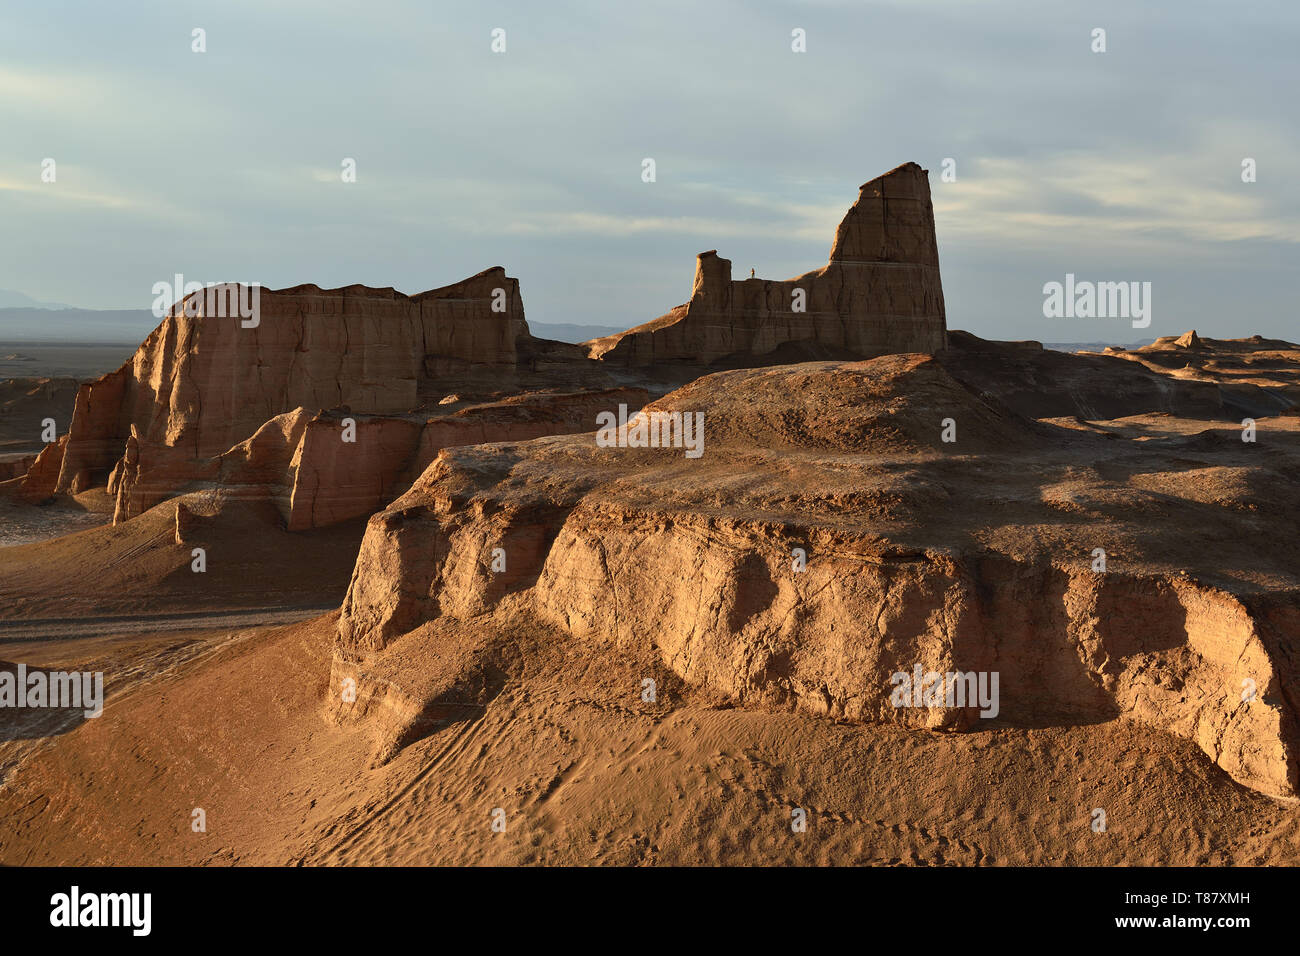 Les formations rocheuses gigantesques sur le désert du Lut - Dasht-e-Lut les plus chauds et plus arides de la planète, localiser près de Kerman, Iran. Banque D'Images